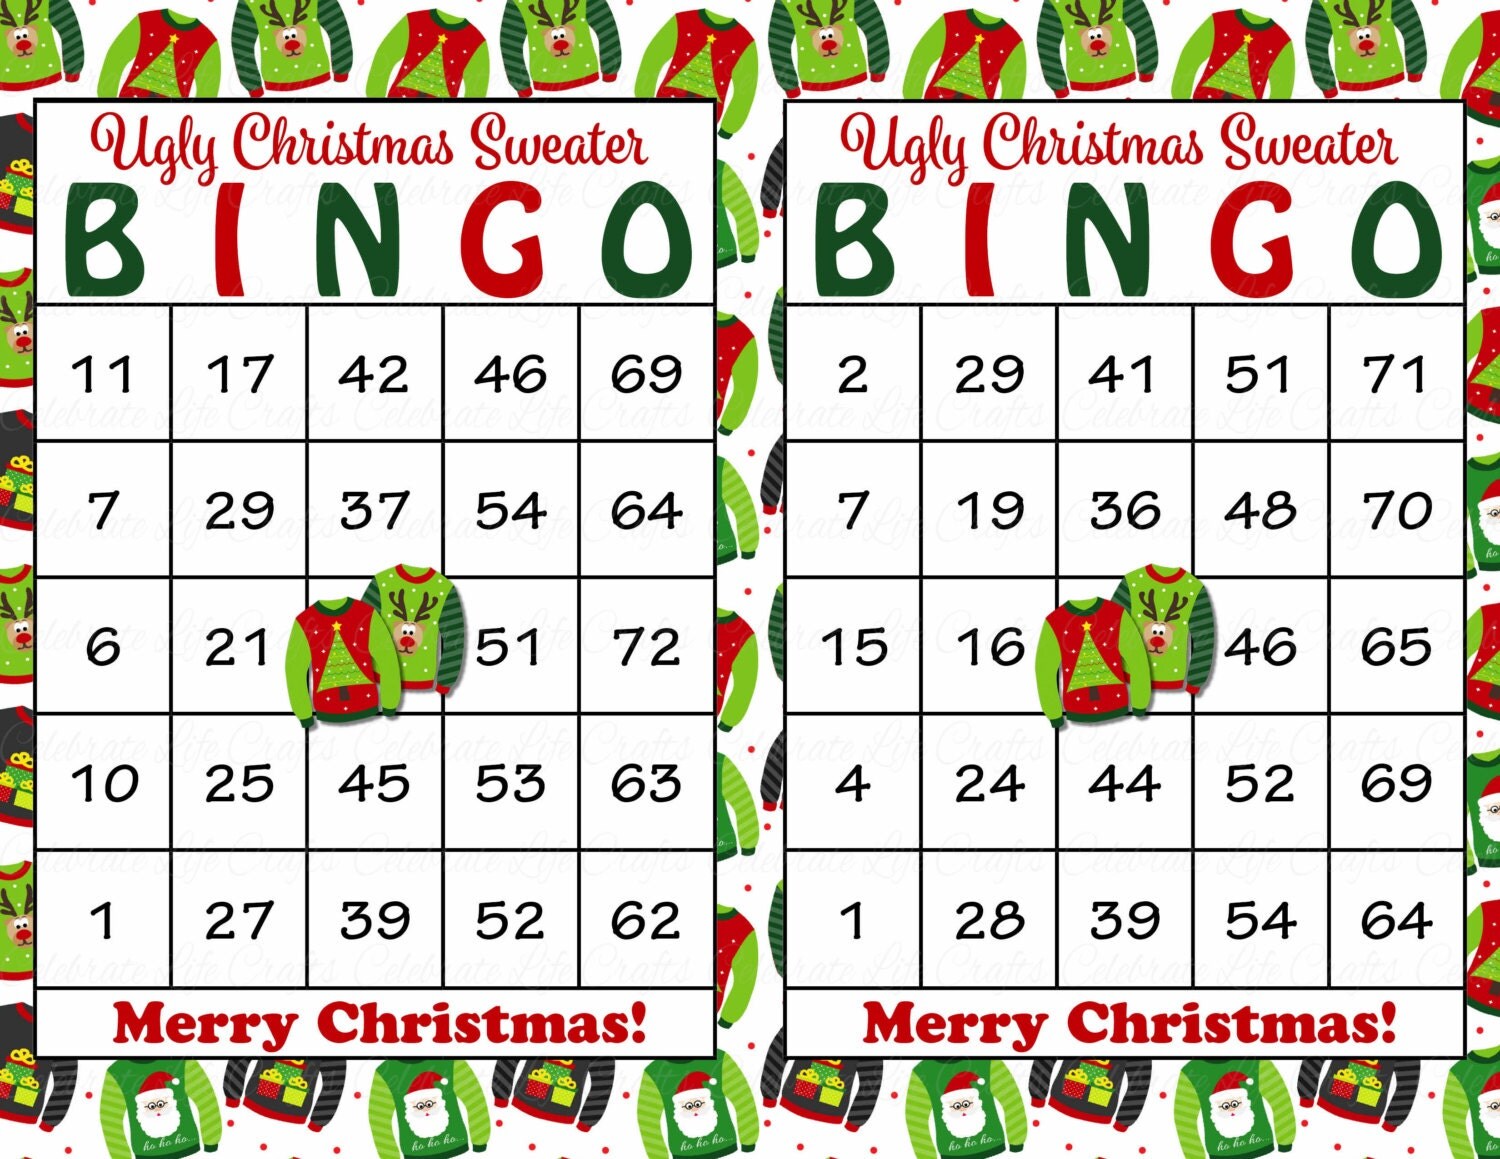 30-ugly-christmas-sweater-bingo-cards-diy-printable-game-for